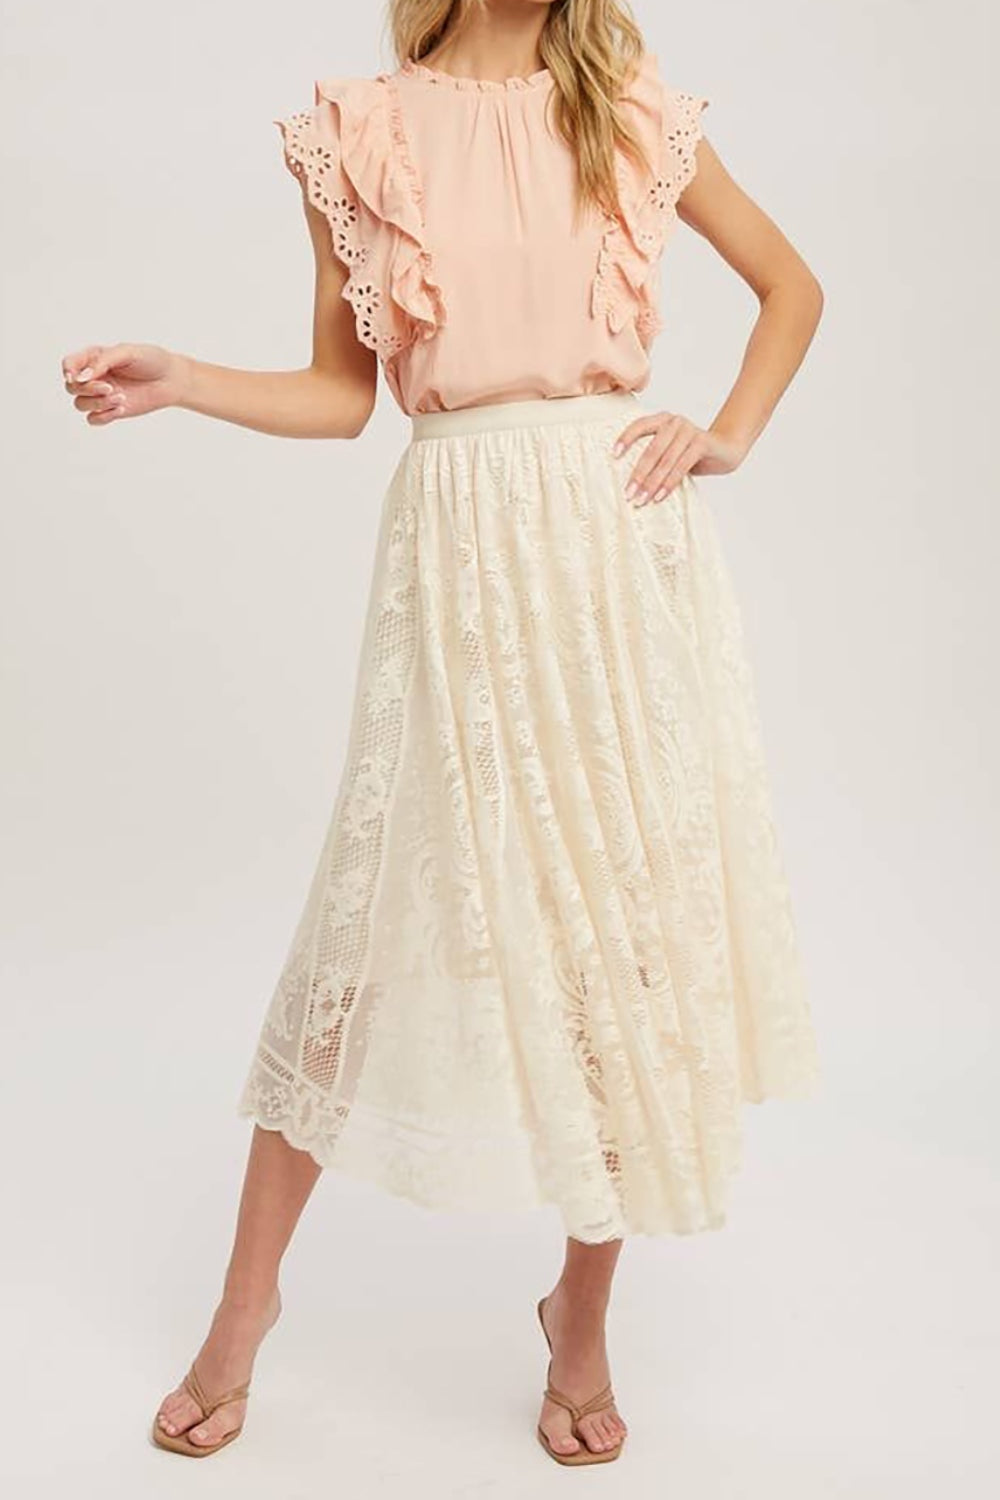 TEEK - Lace High Waist Midi Skirt SKIRT TEEK Trend   